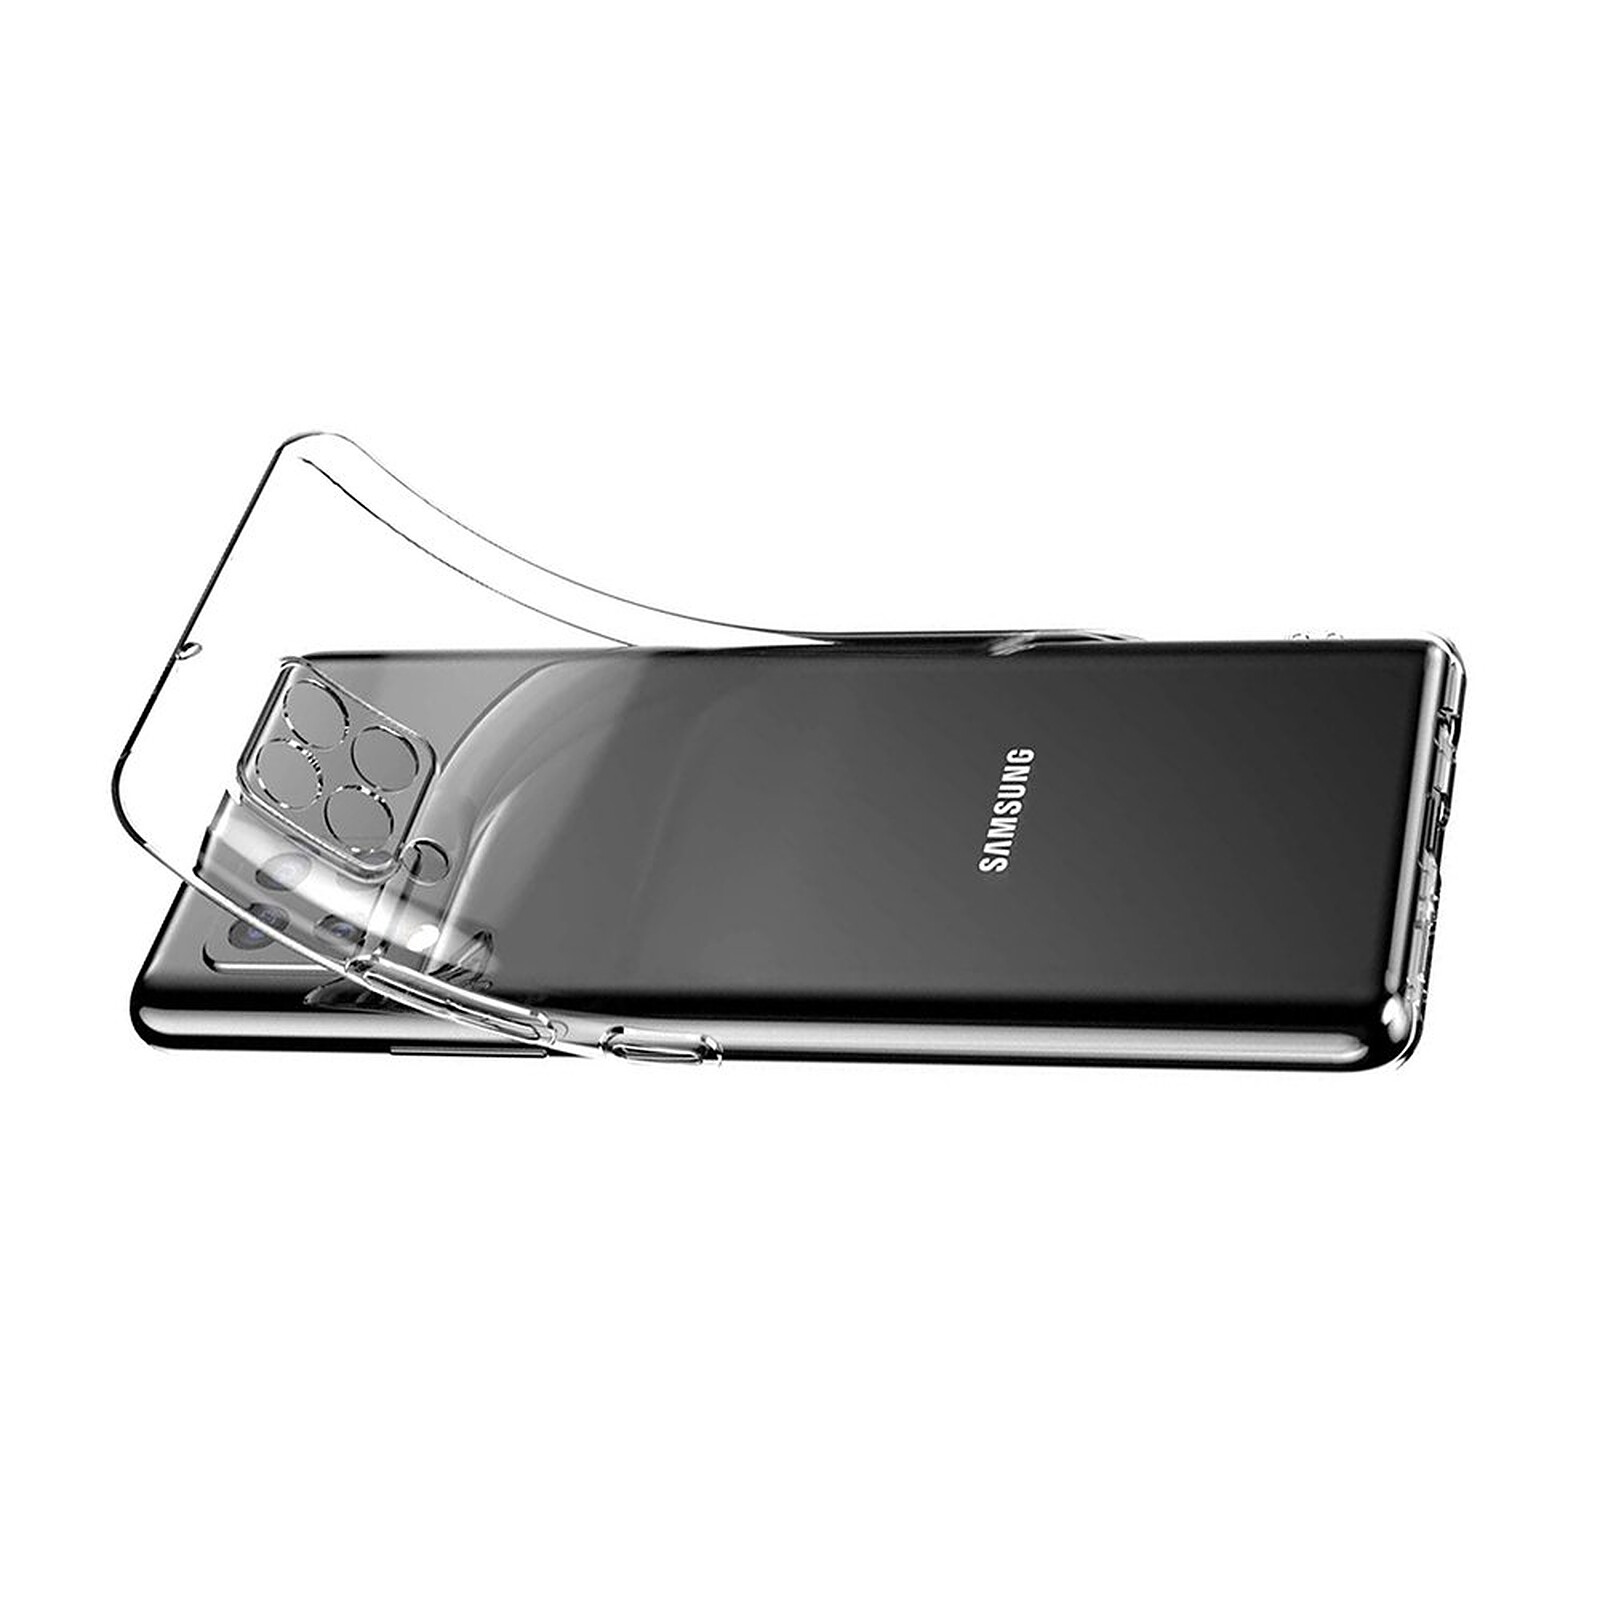 Motif mignon Pour fille Fine et flexible Coque de protection pour Samsung Galaxy A12 En TPU En silicone transparent Pour Samsung A12